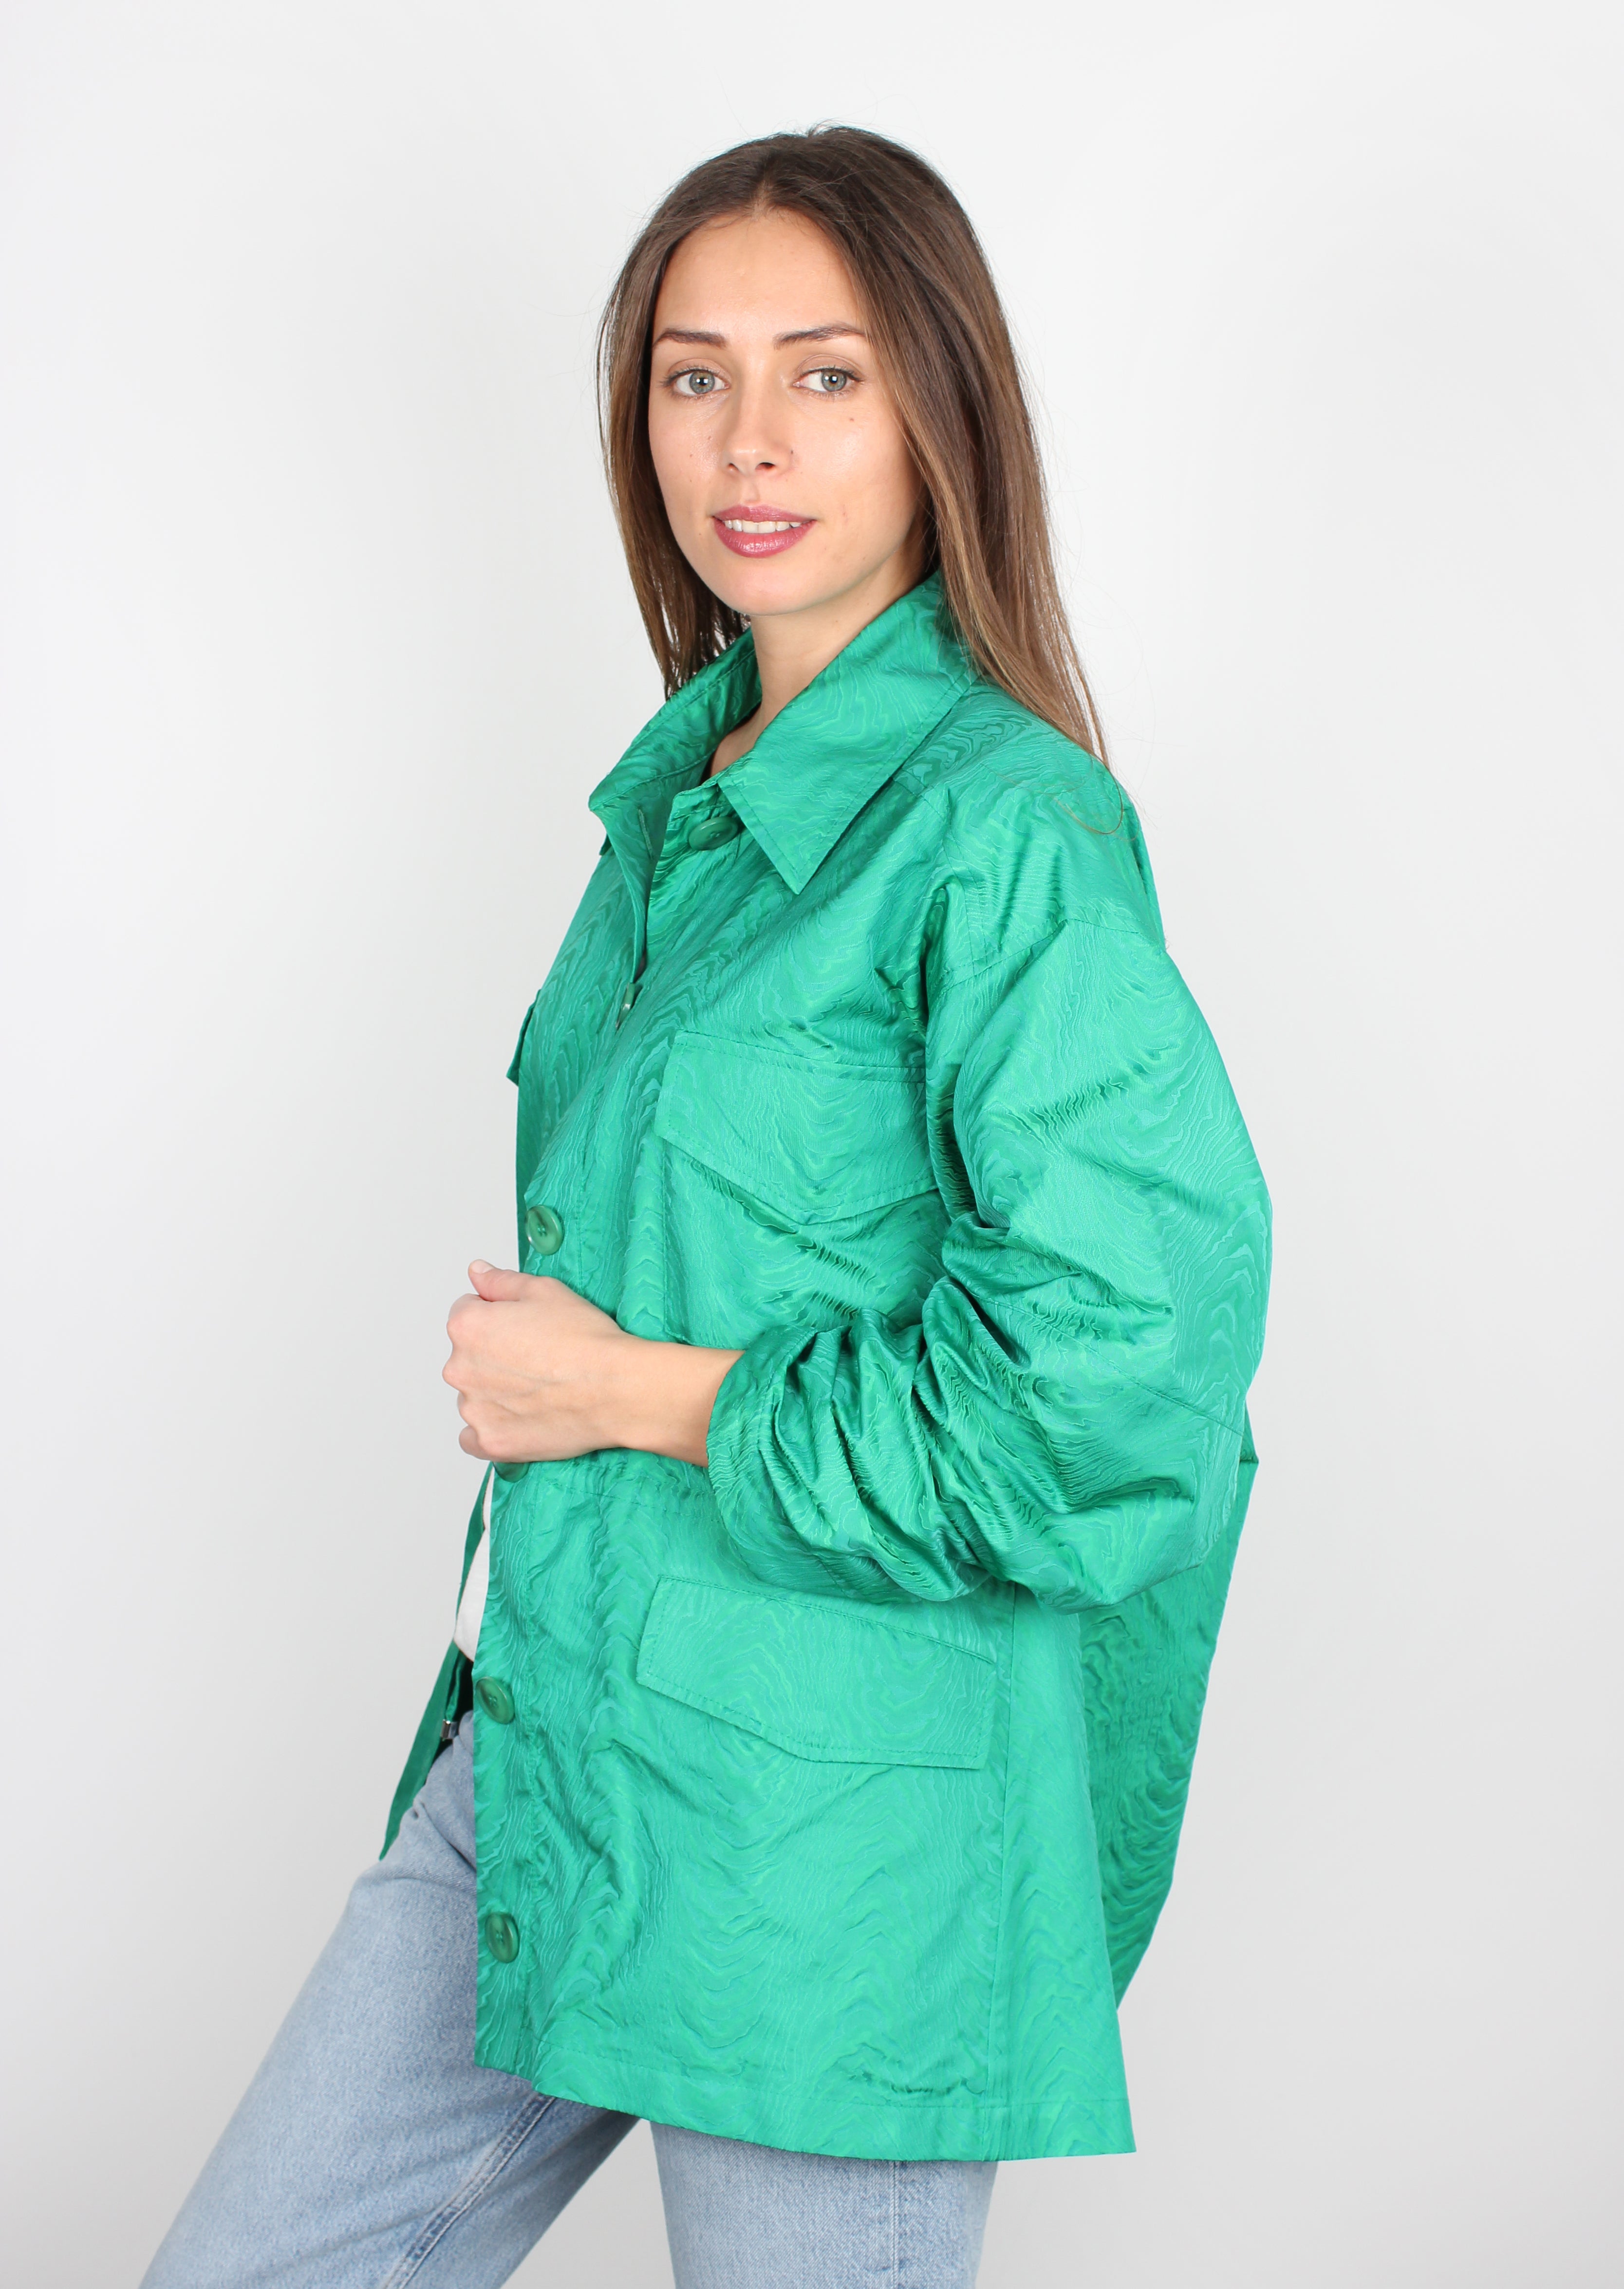 Essentiel Antwerp Banx oversized green shirt